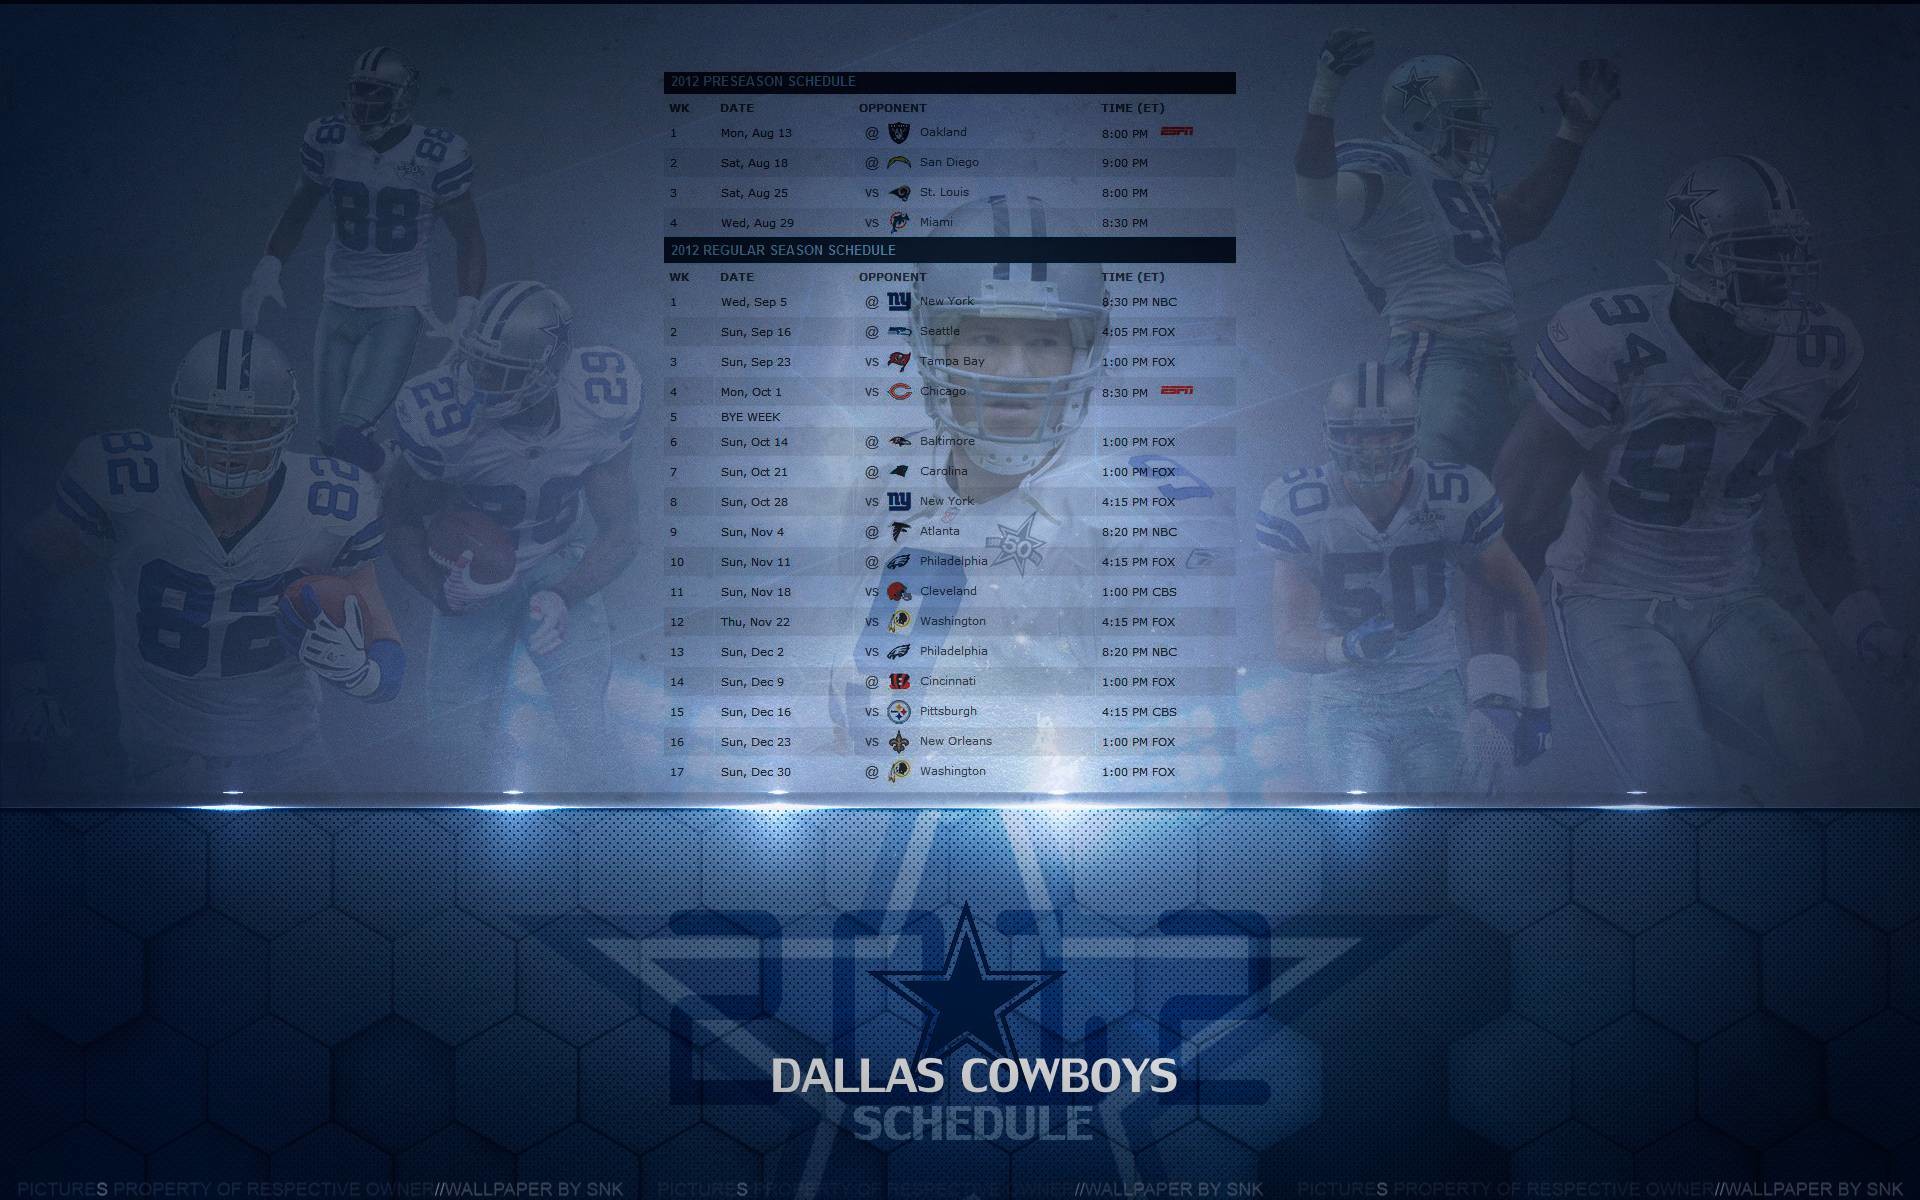 Live Dallas Cowboys Wallpaper In Hd Photo - Dallas Cowboys Wallpaper 2018 Schedule , HD Wallpaper & Backgrounds